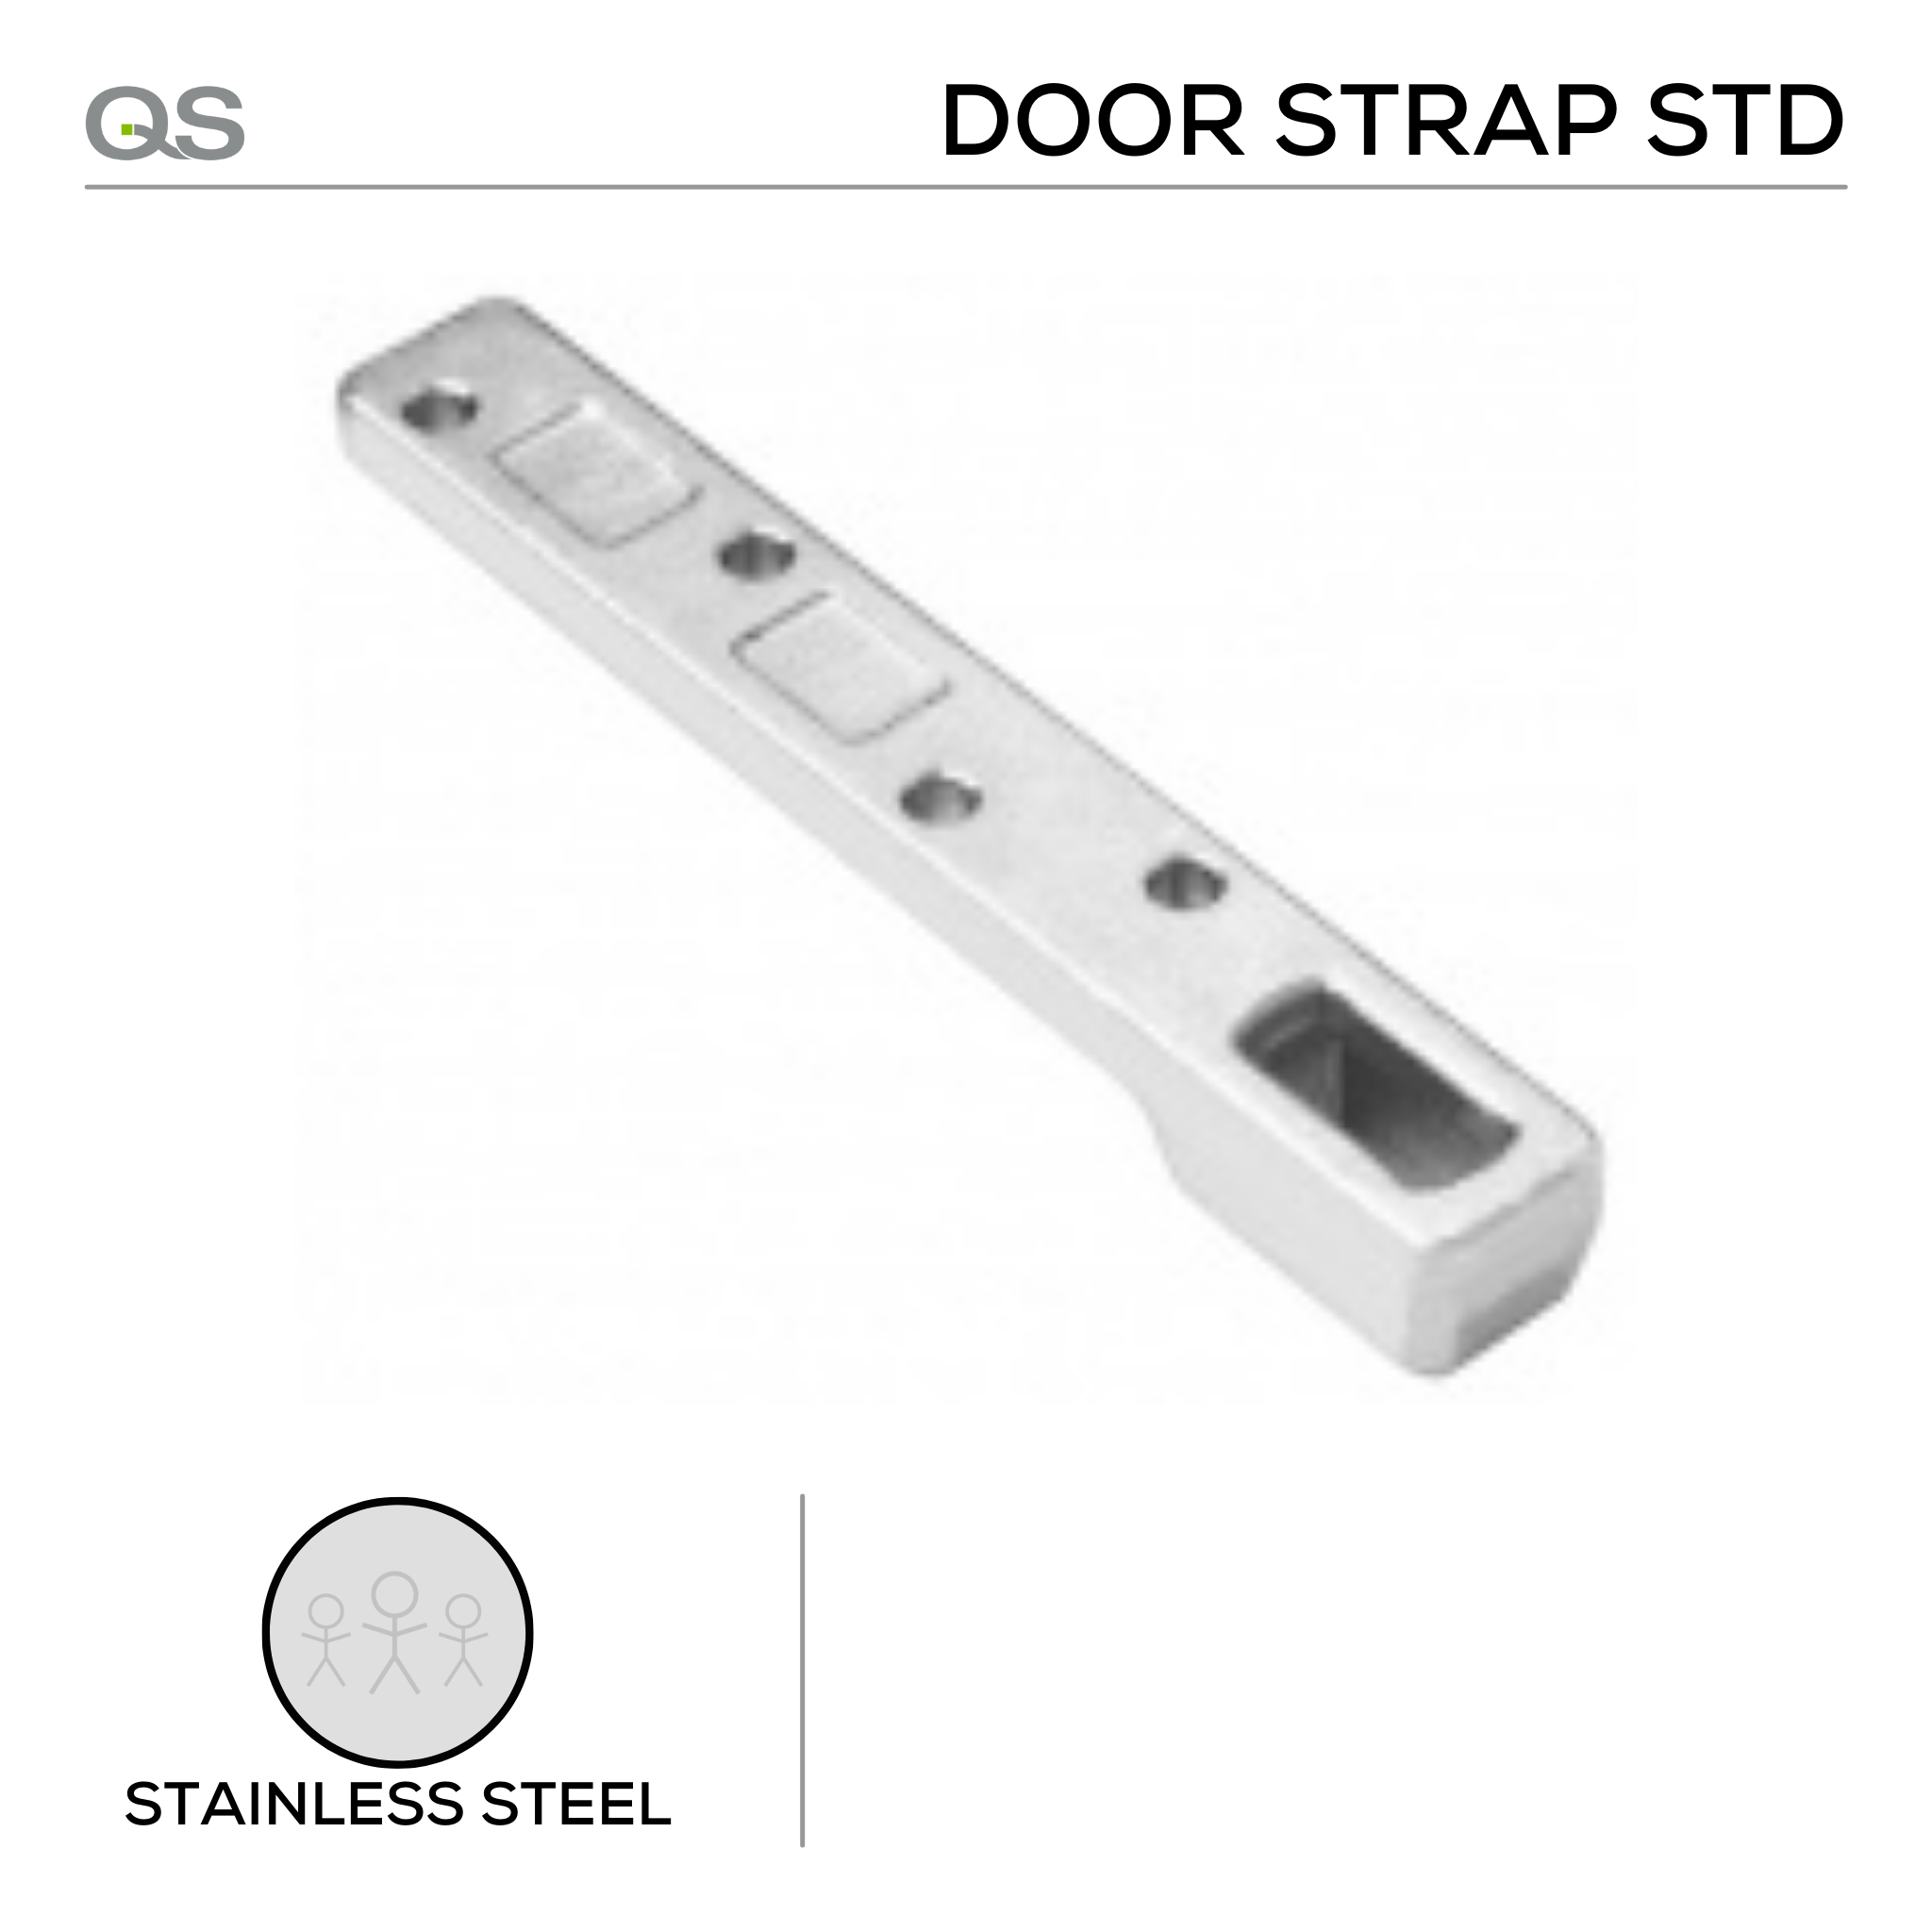 QS8815 door strap STD, Door Strap, Double Action, Standard, Stainless Steel, QS